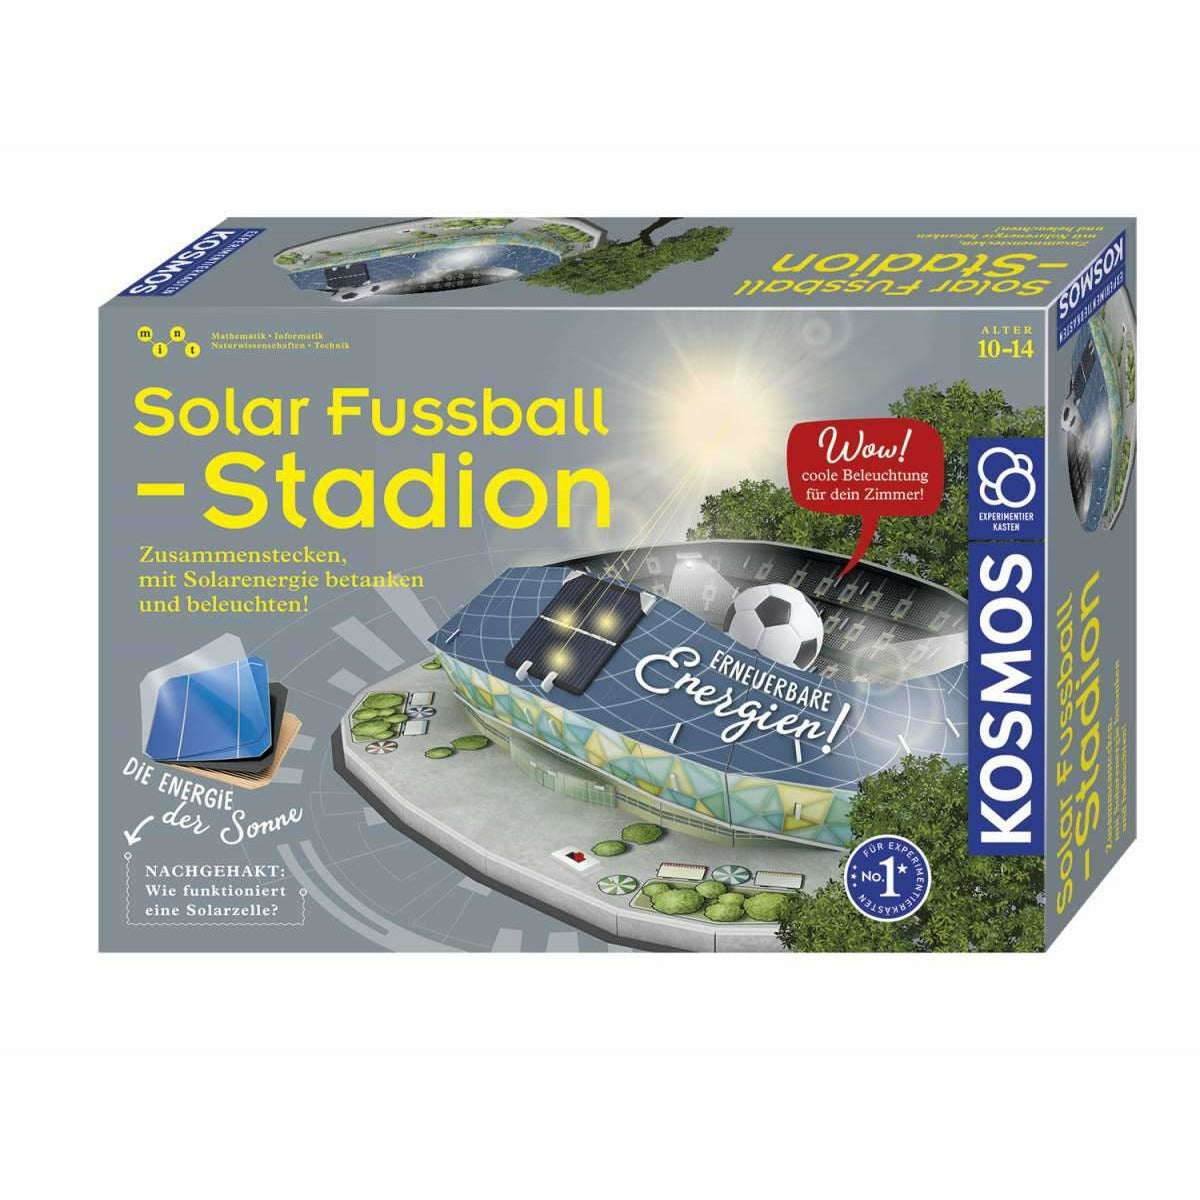 Solar-Fußballstadion